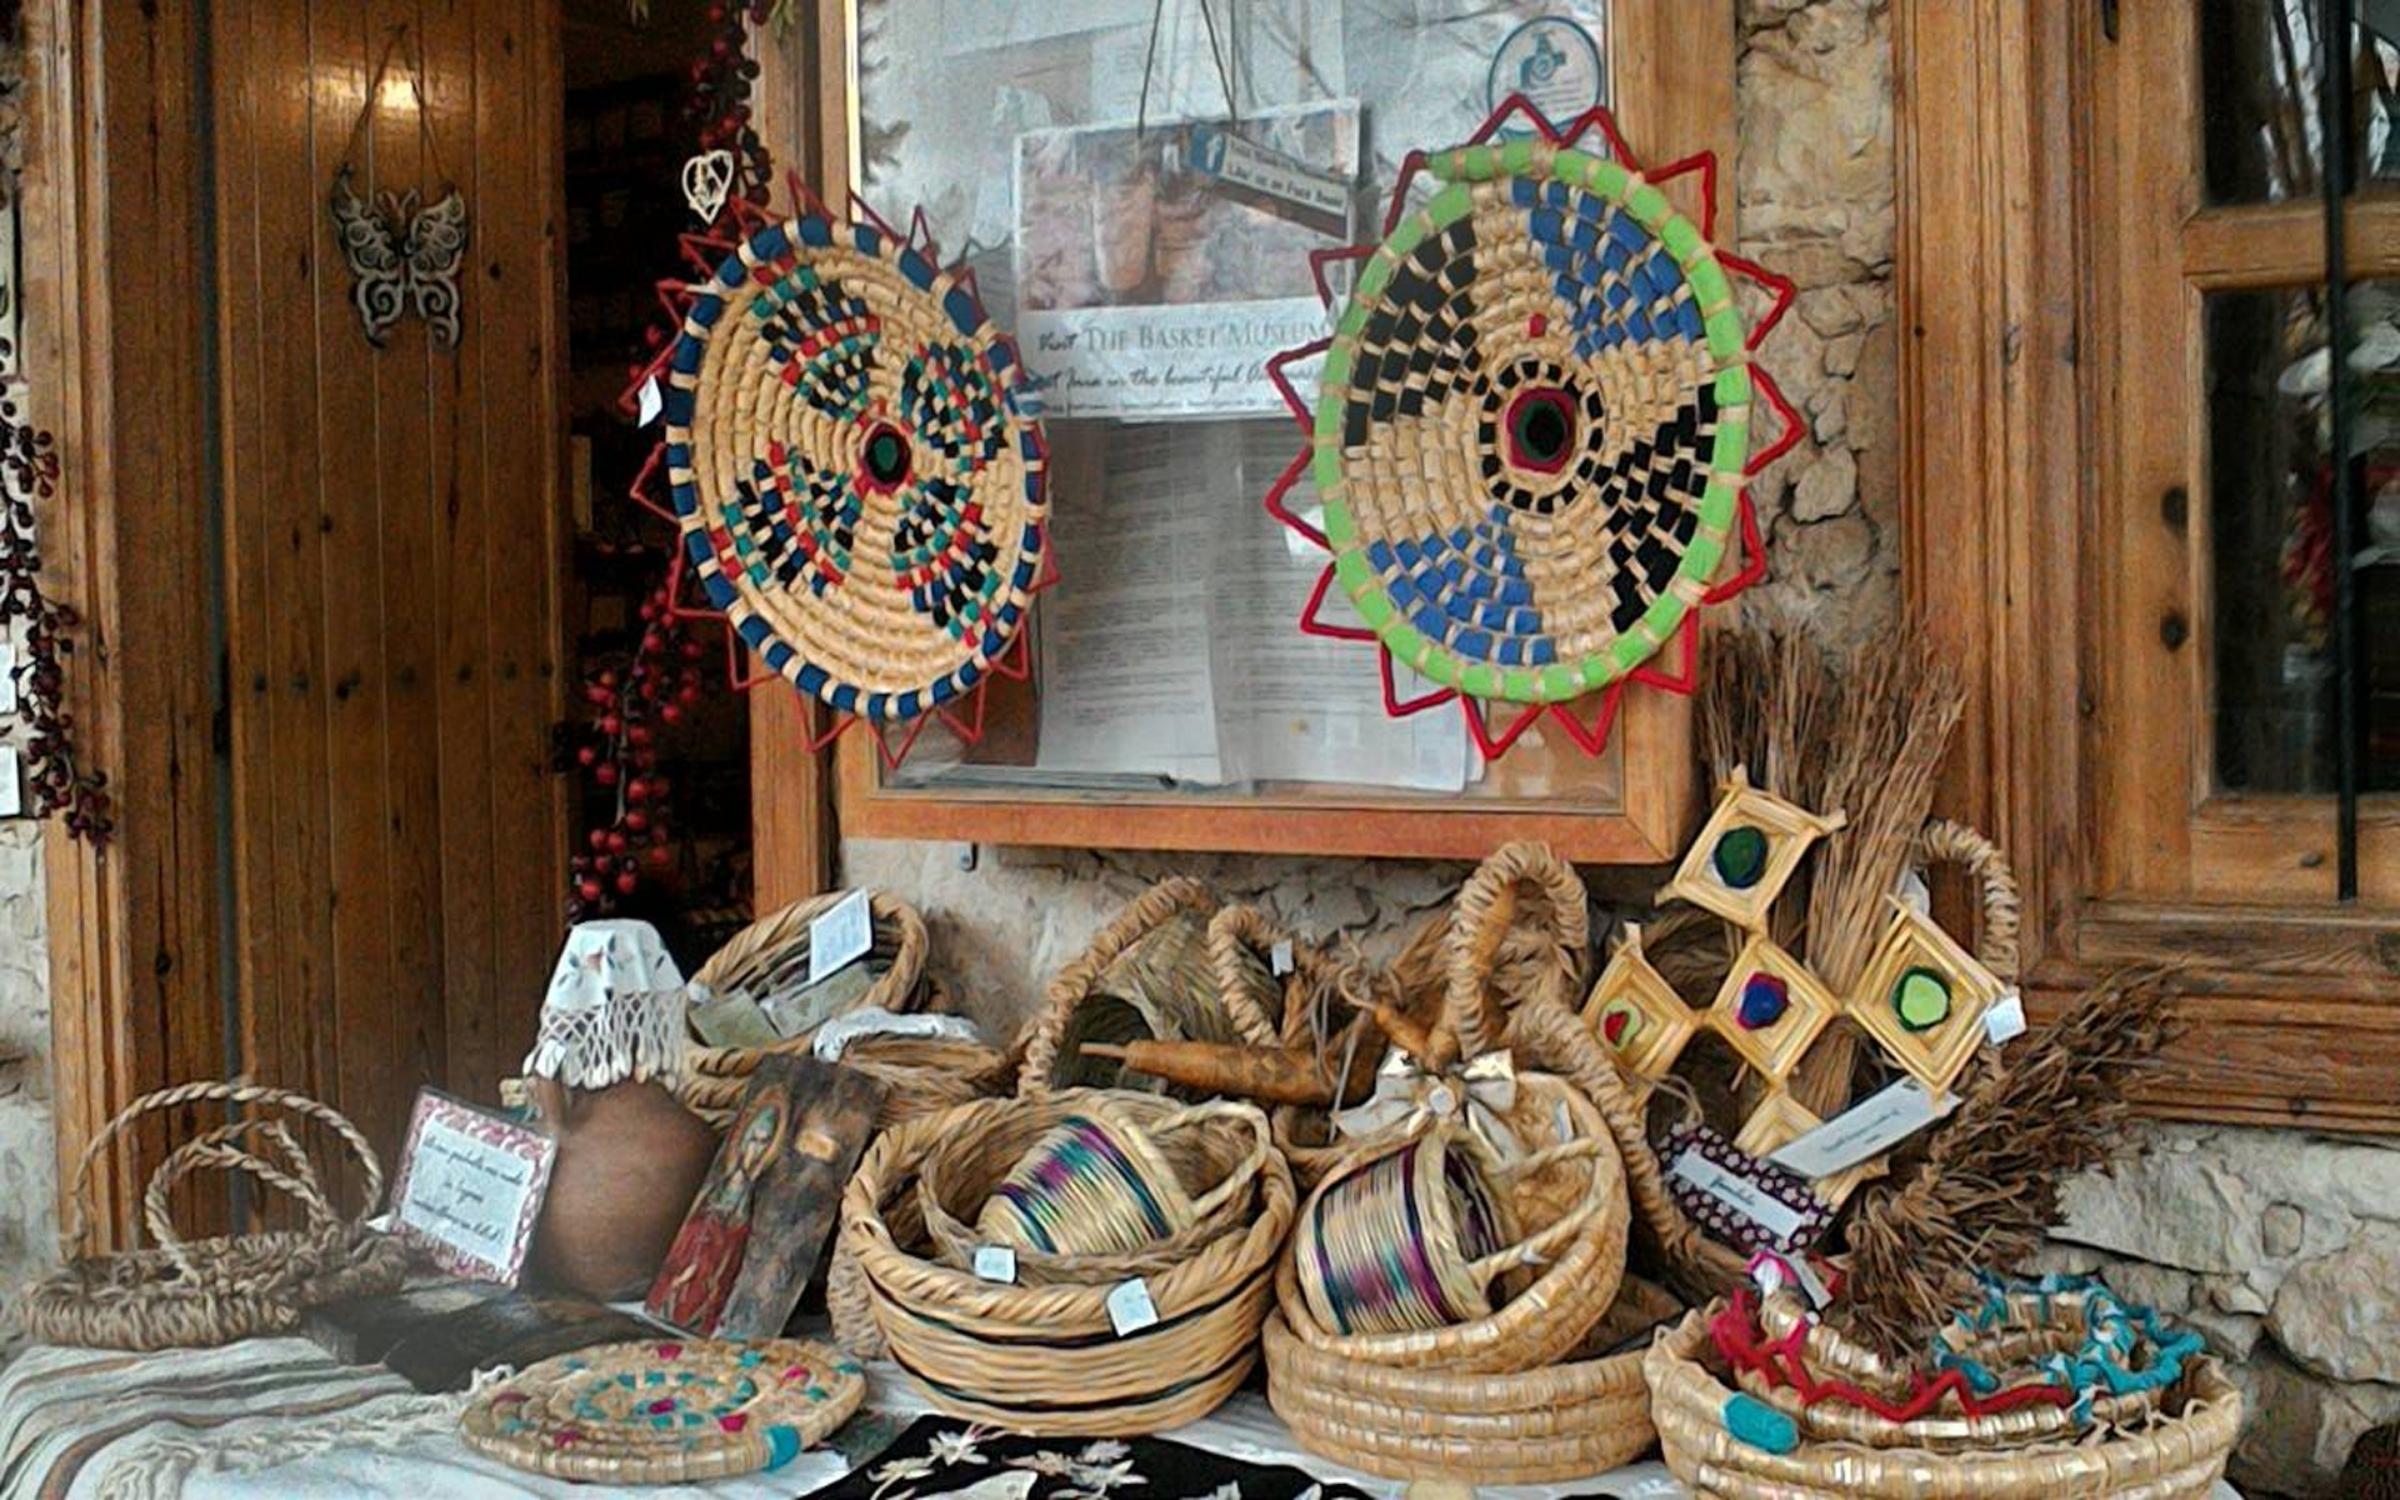 Inia Basket Weaving Museum in Cyprus